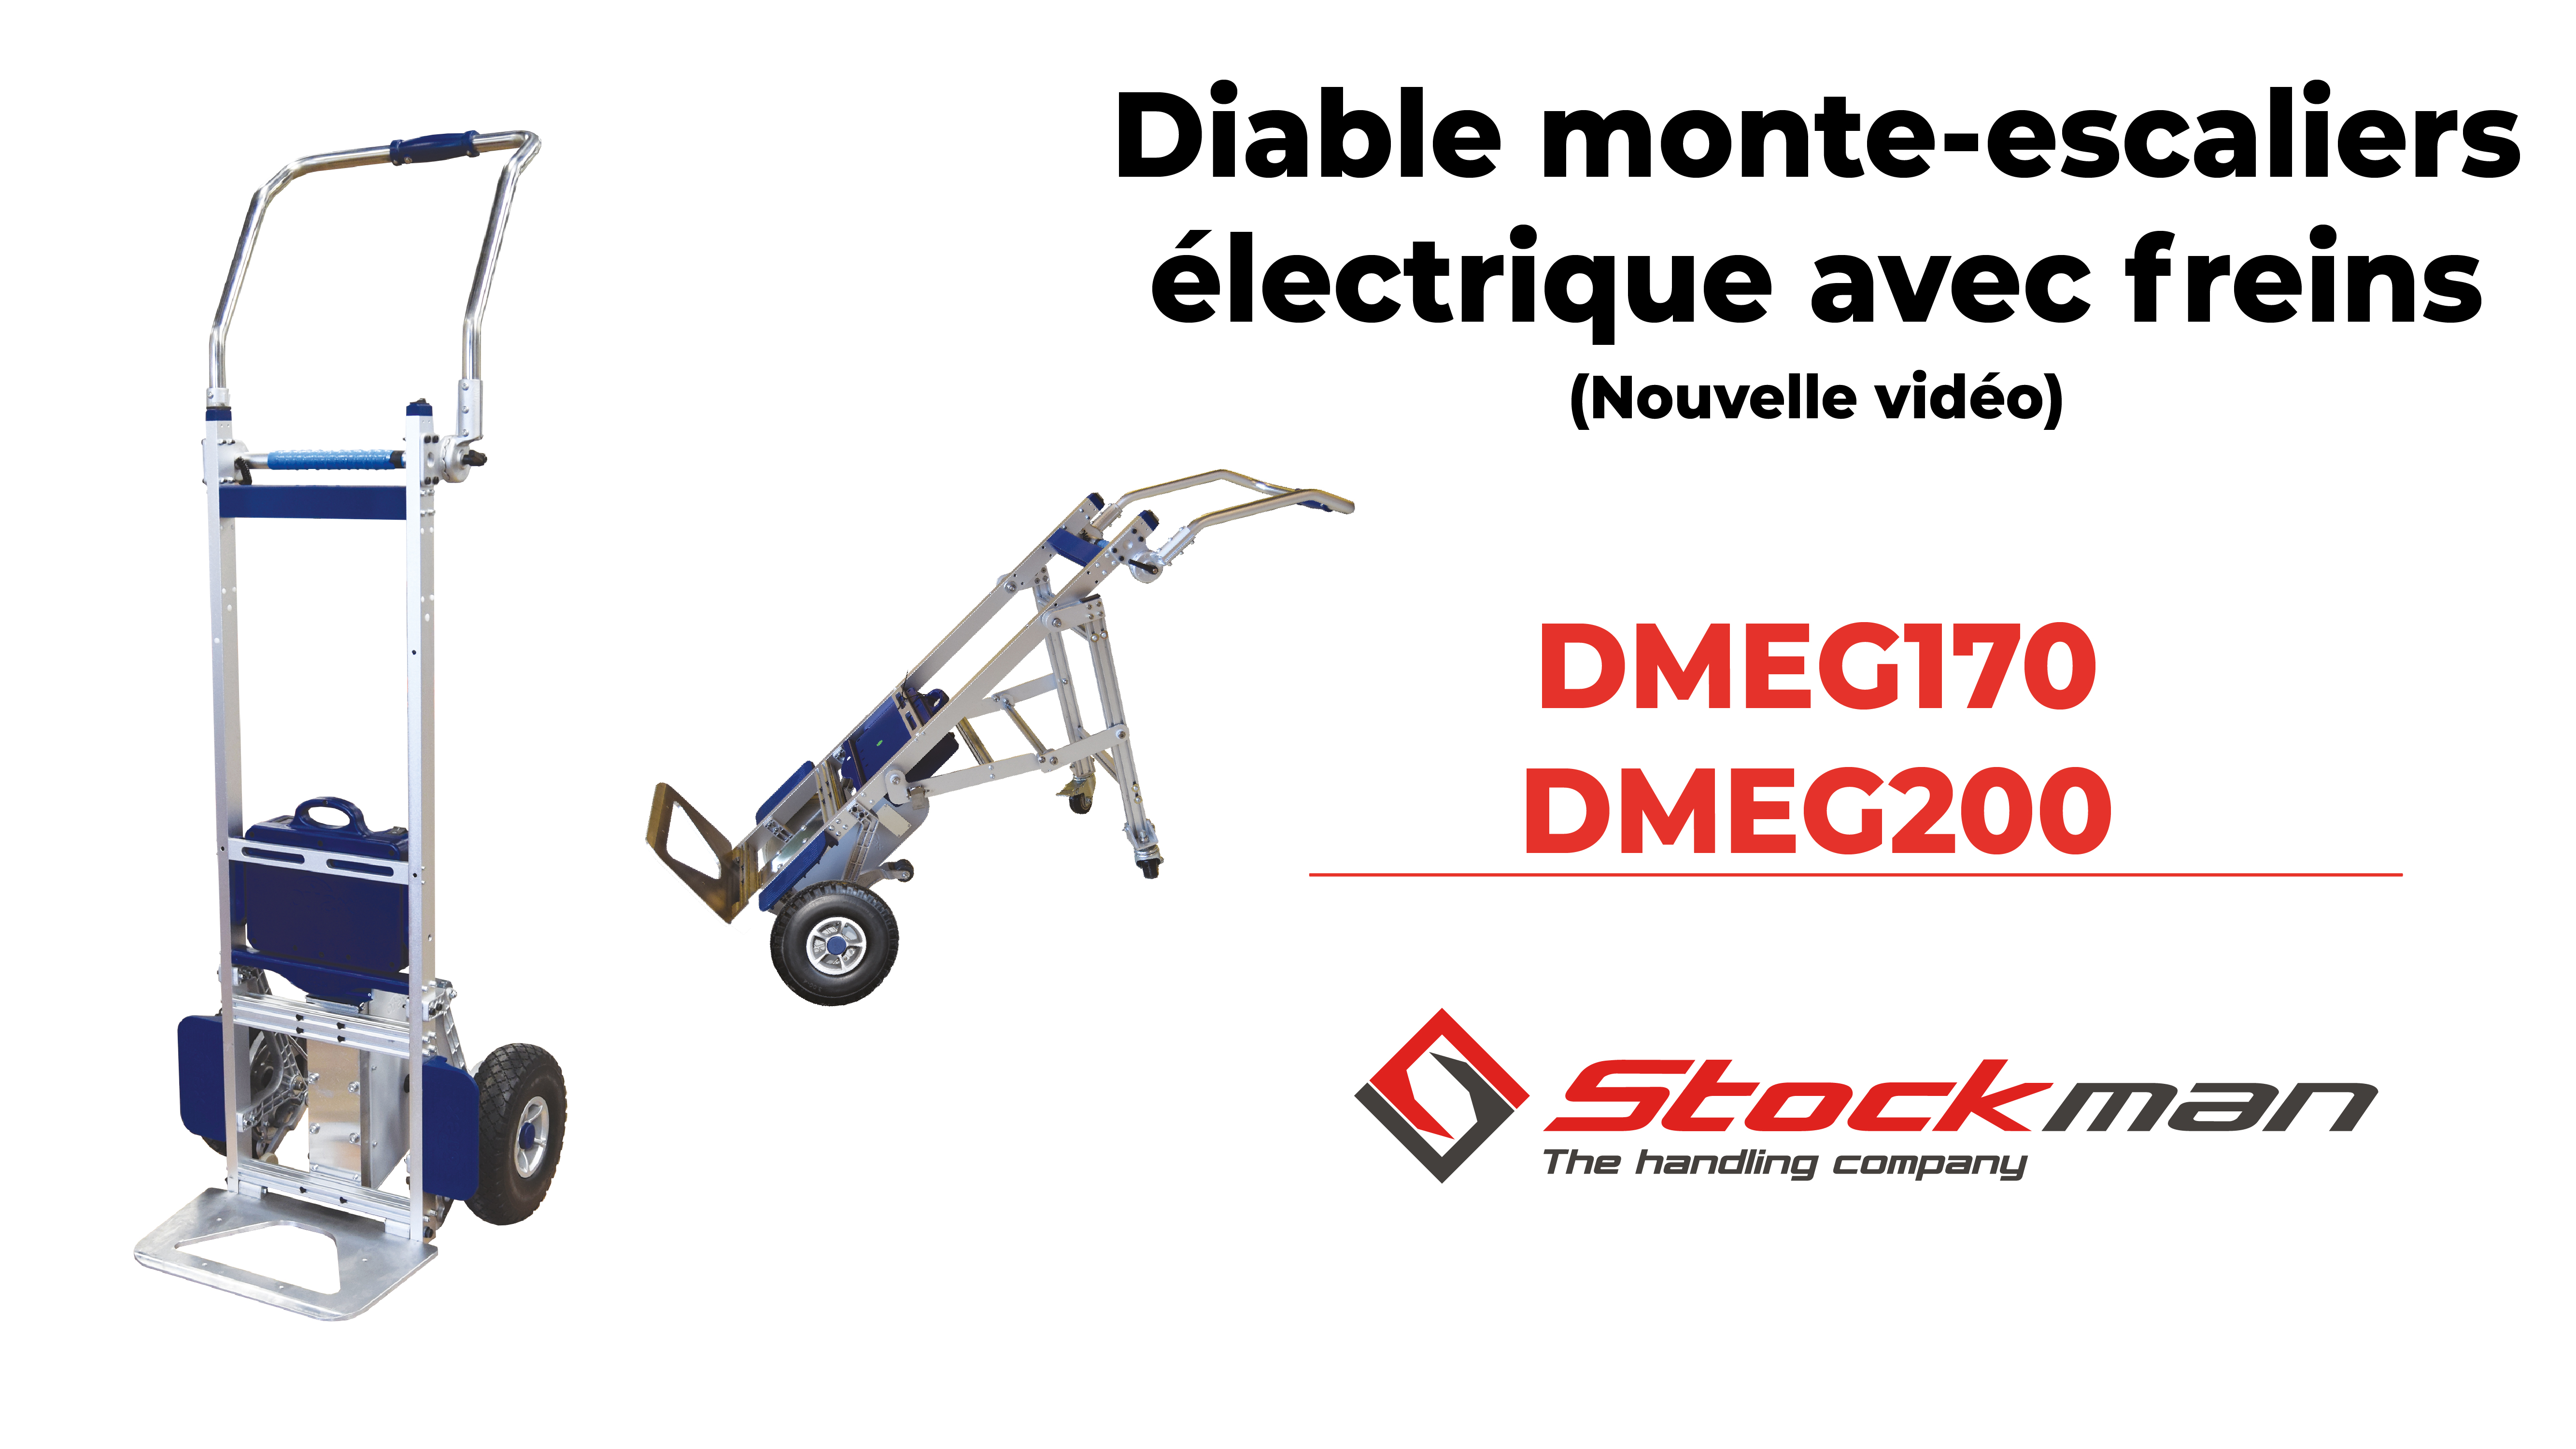 Le diable monte-escaliers électrique avec système de freinage automatique : DMEG170 et DMEG200<br>